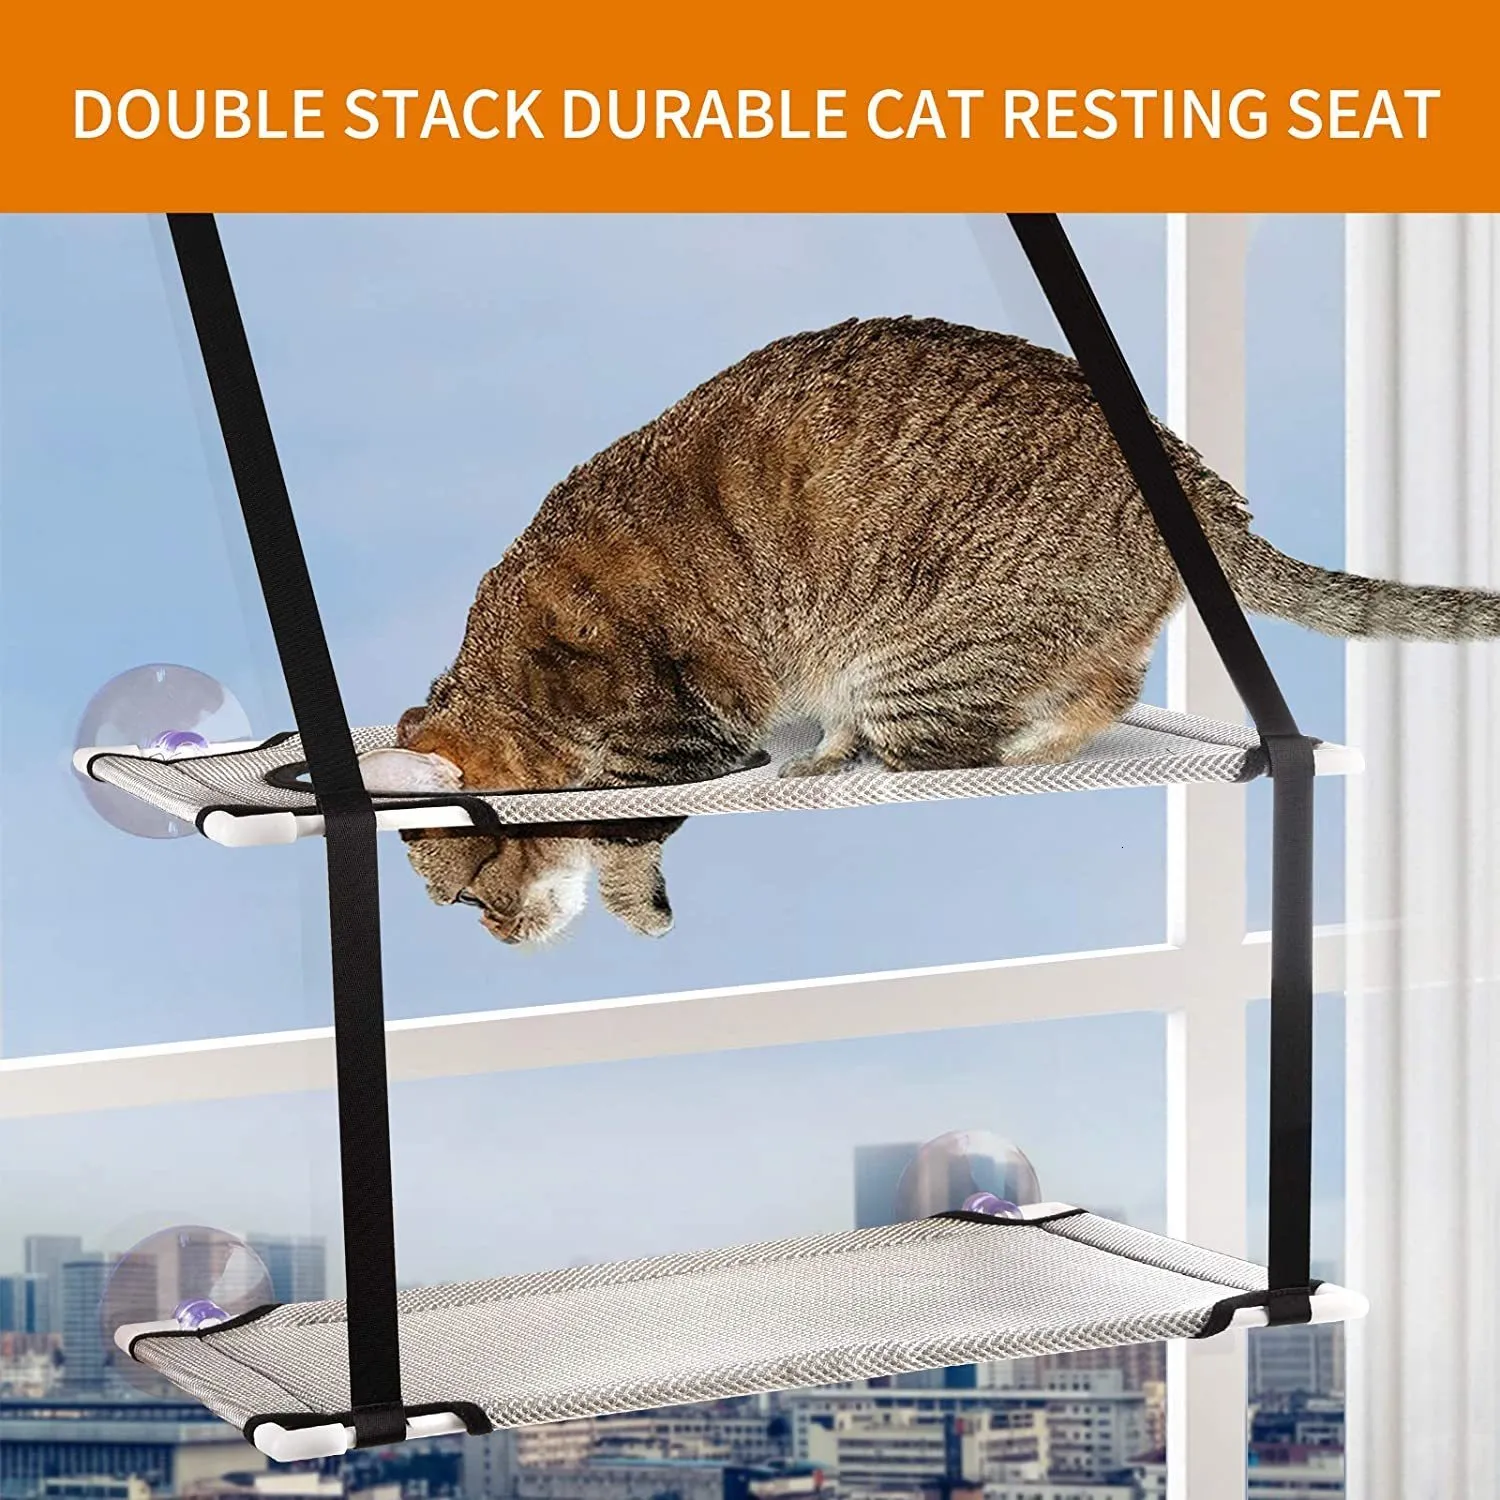 Inne dostawy kotów wielowarstwowe łóżko dla kota podwójny stos trwałe koty spoczynkowe siedzenie wiszące okno Pet Hammock Sunny Kittot Couch 25 kg C267f